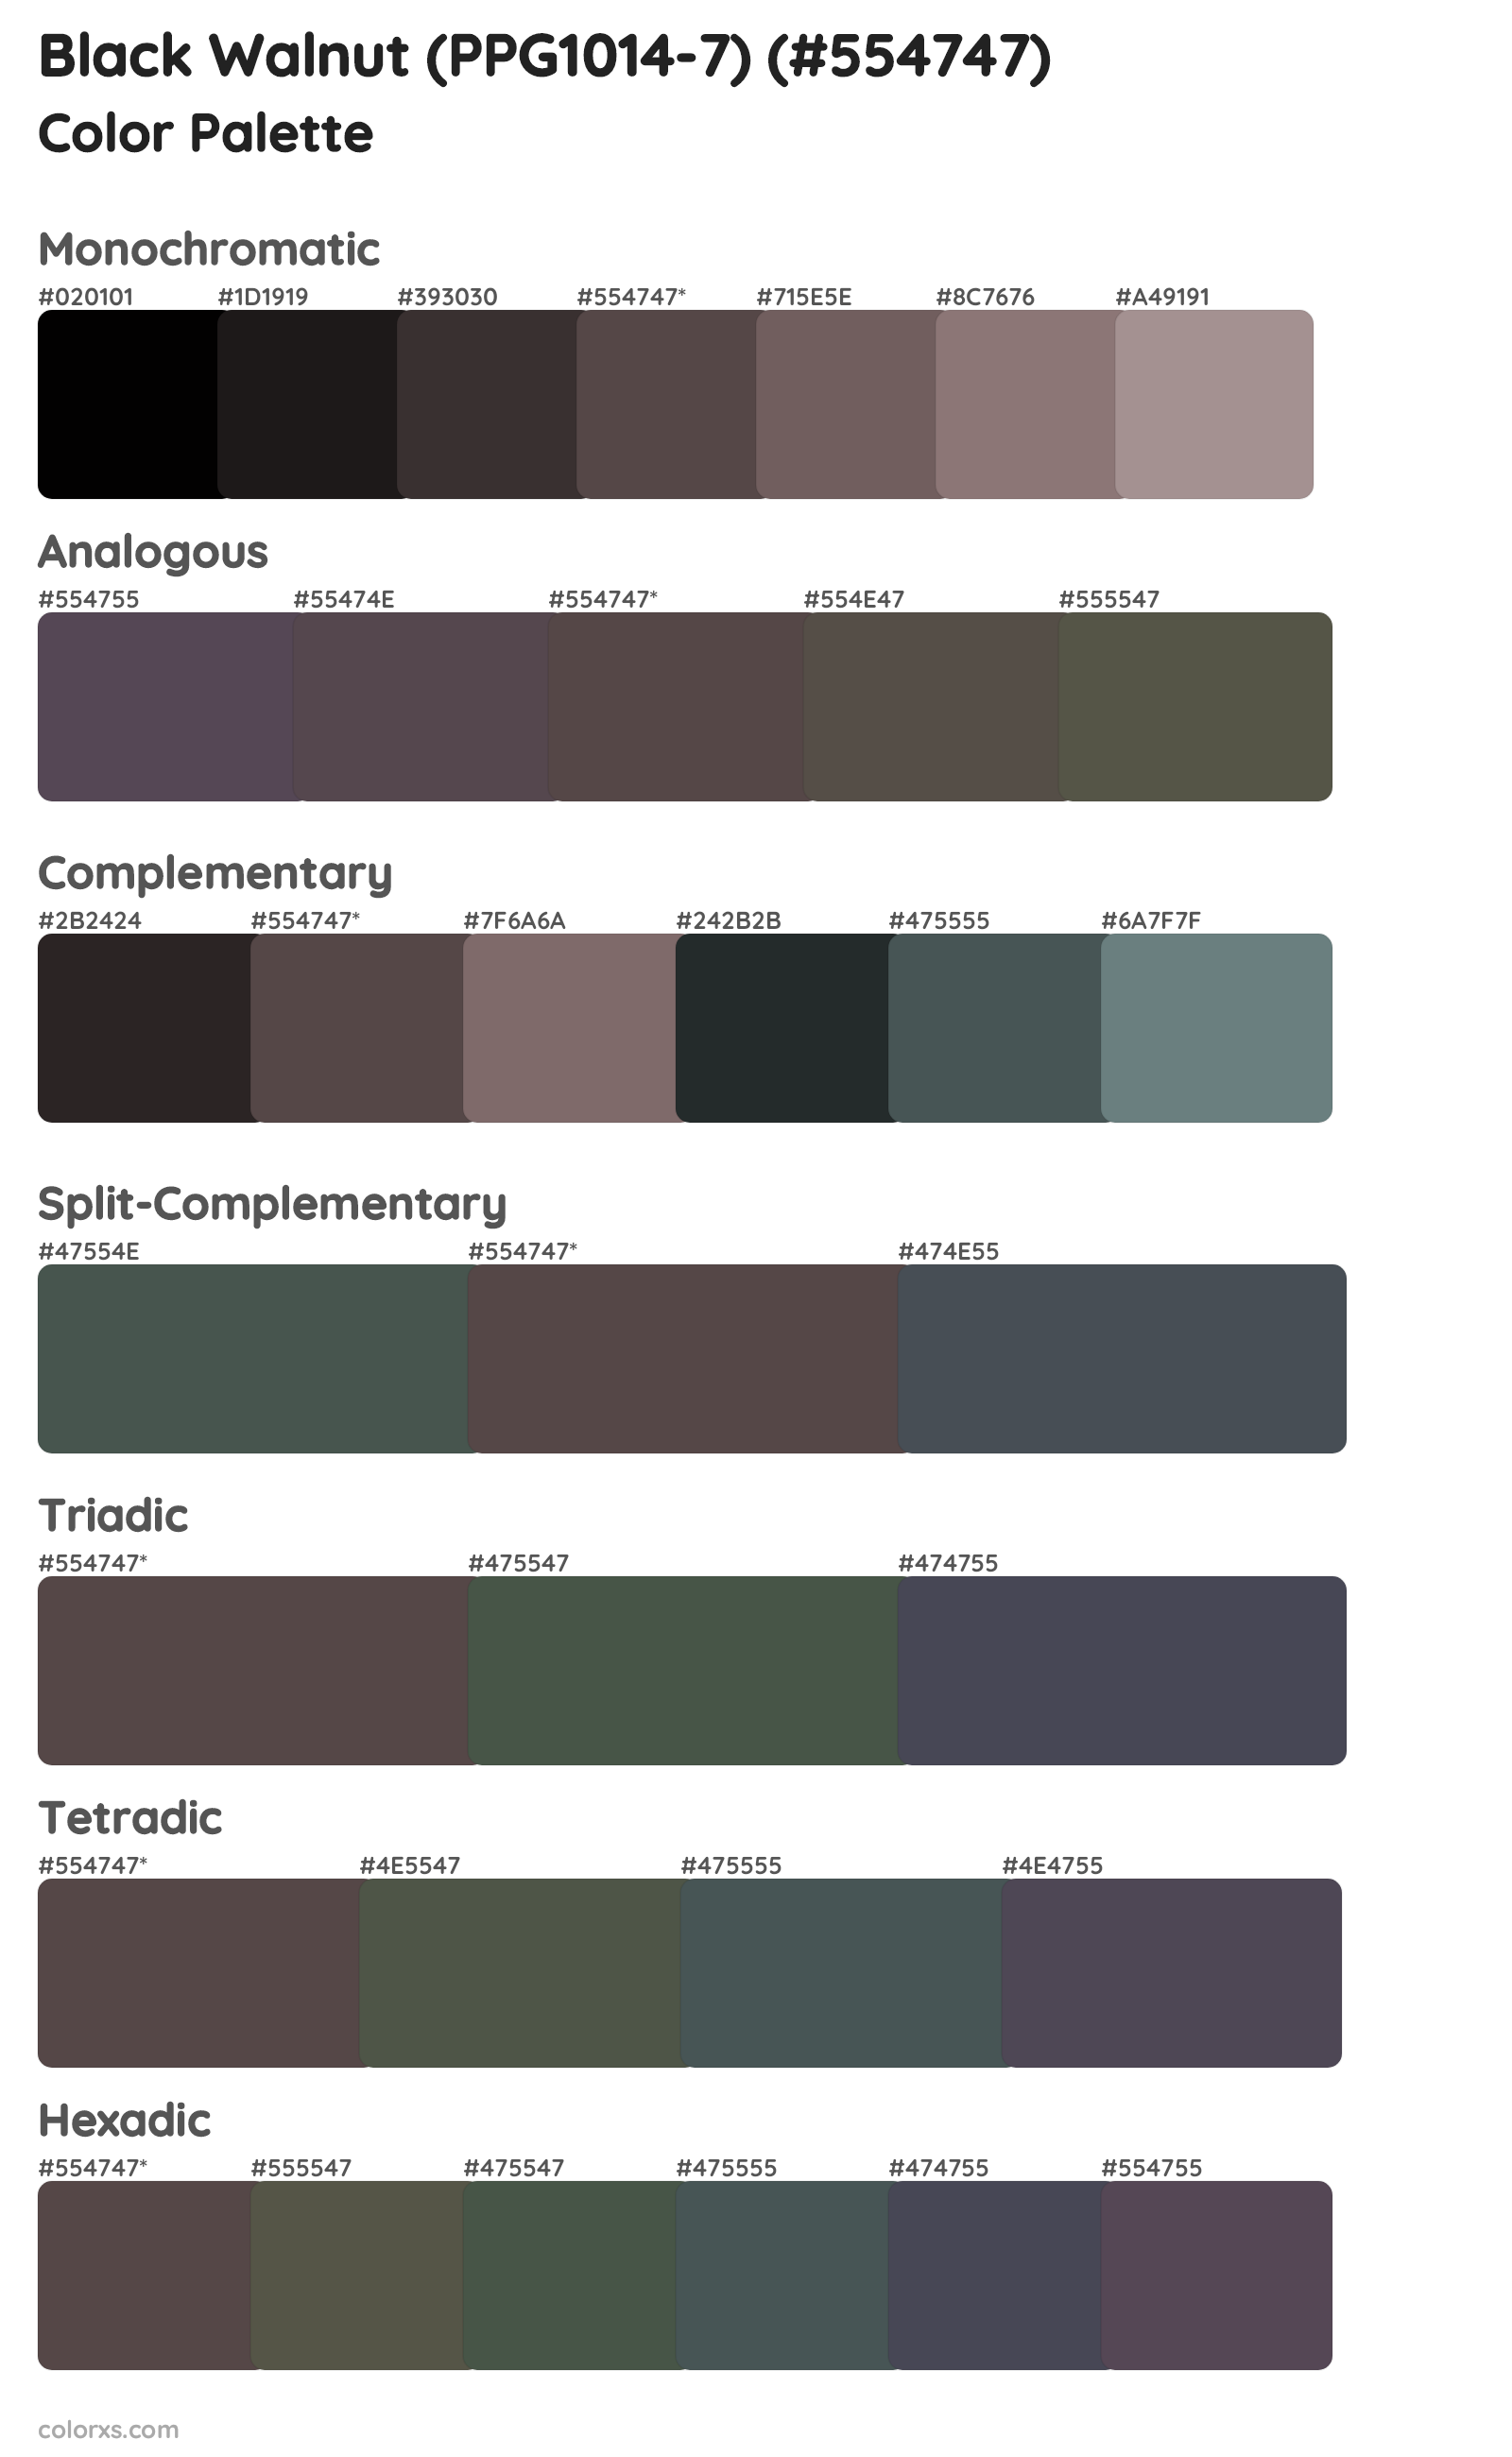 Black Walnut (PPG1014-7) Color Scheme Palettes